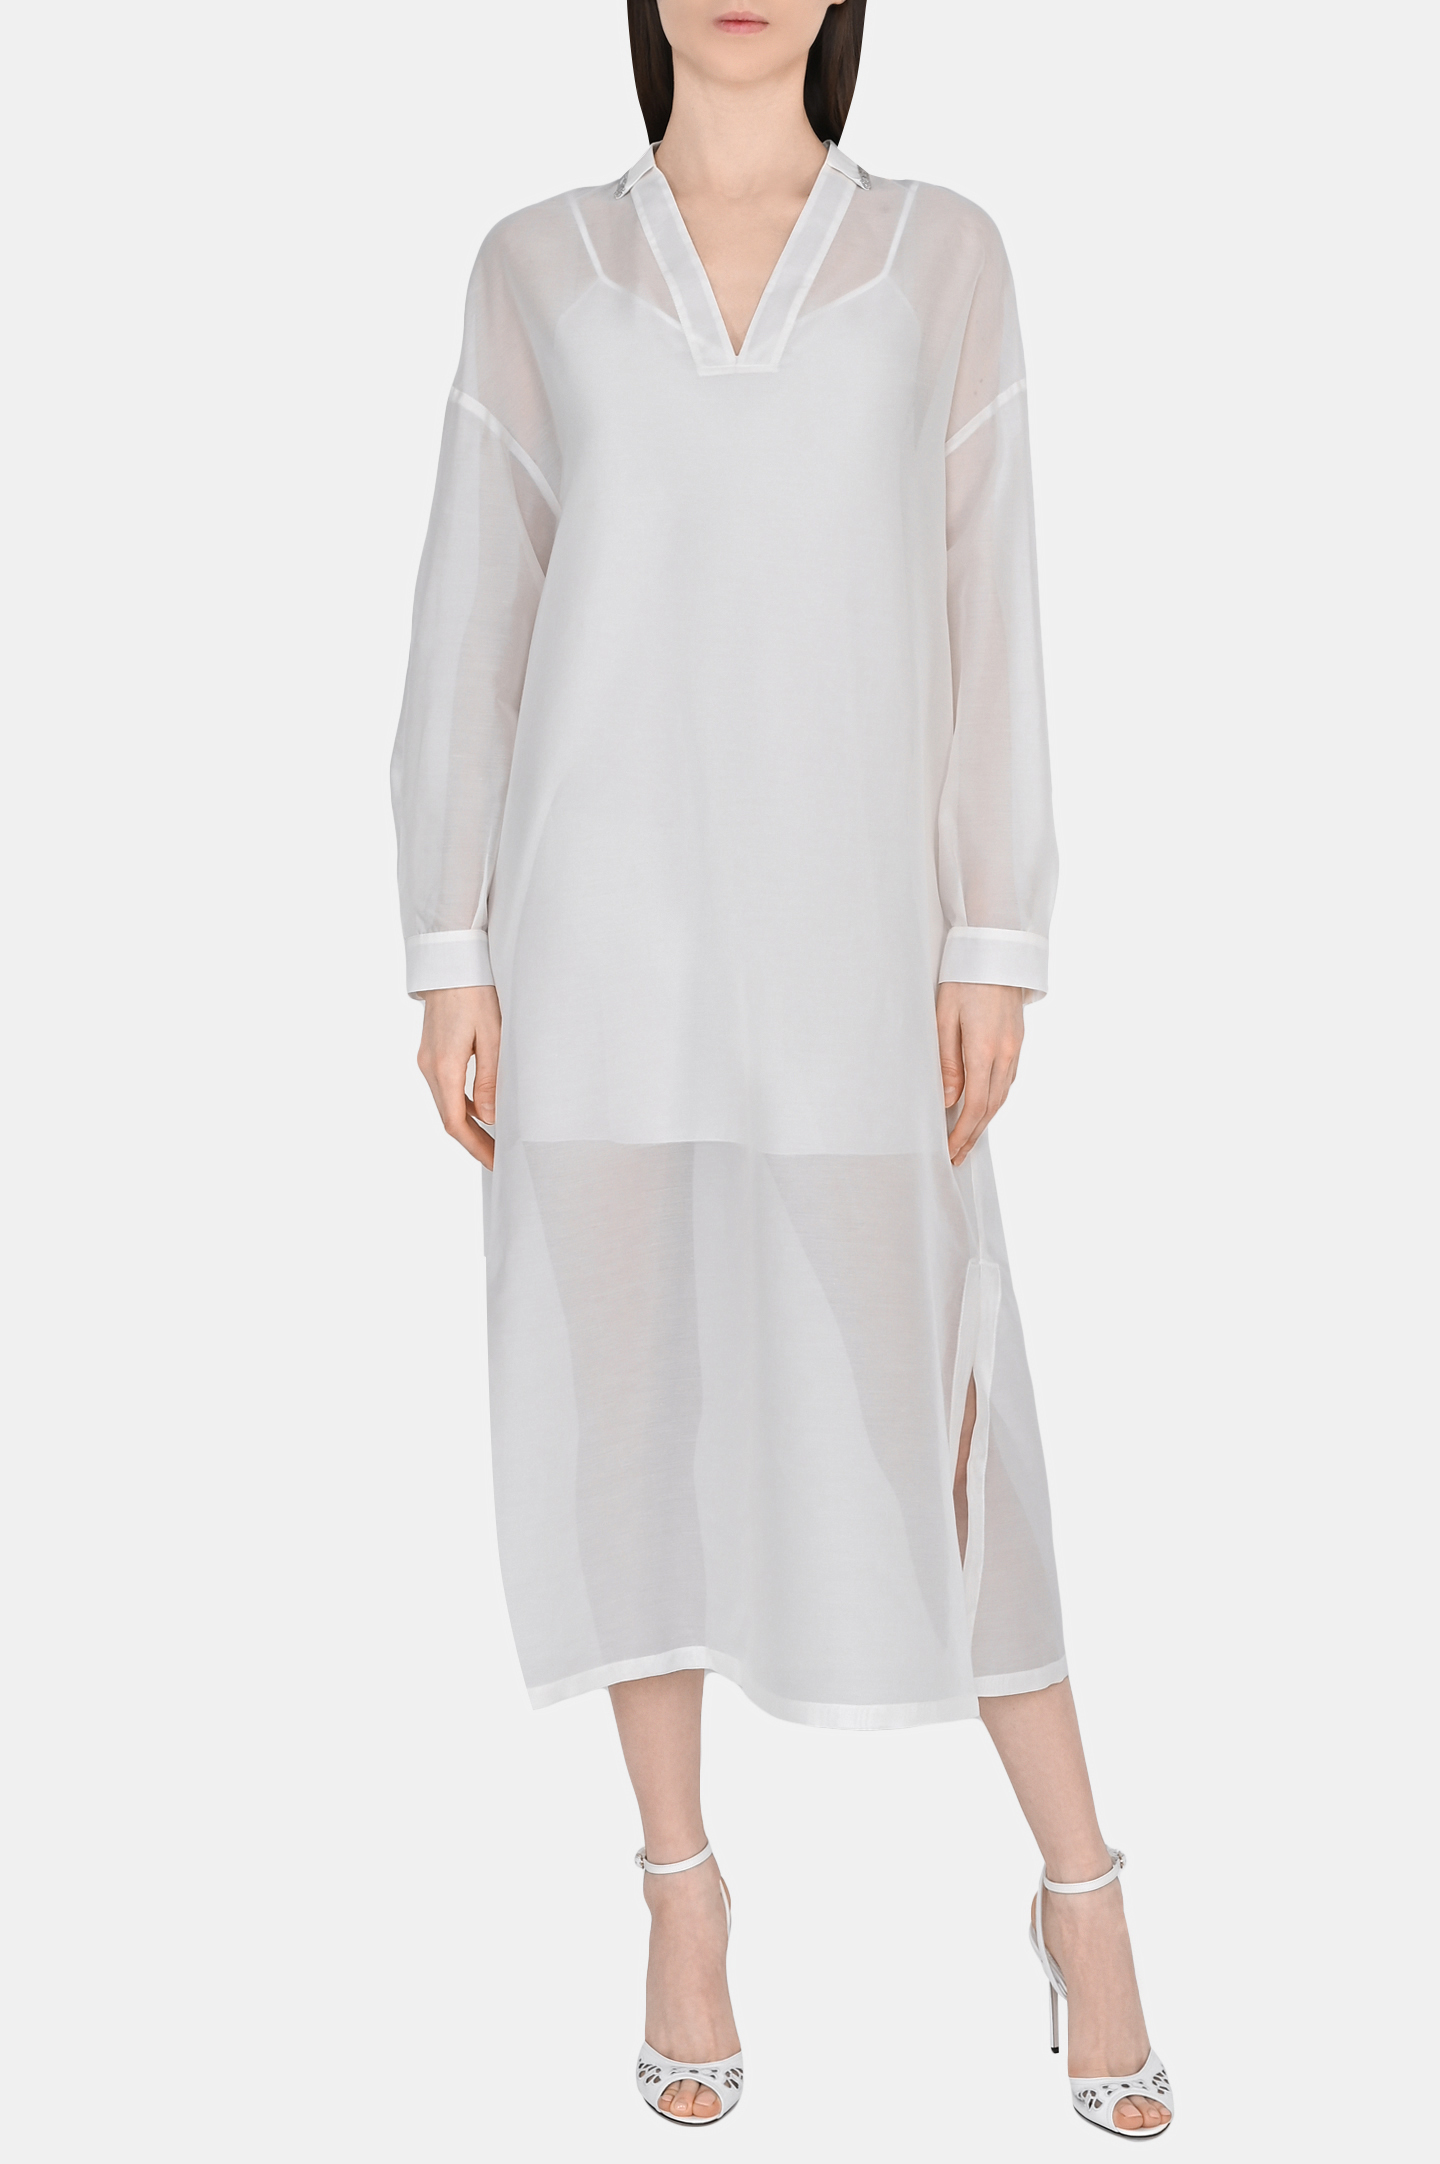 Платье FABIANA FILIPPI ABD273B579I810, цвет: Белый, Женский